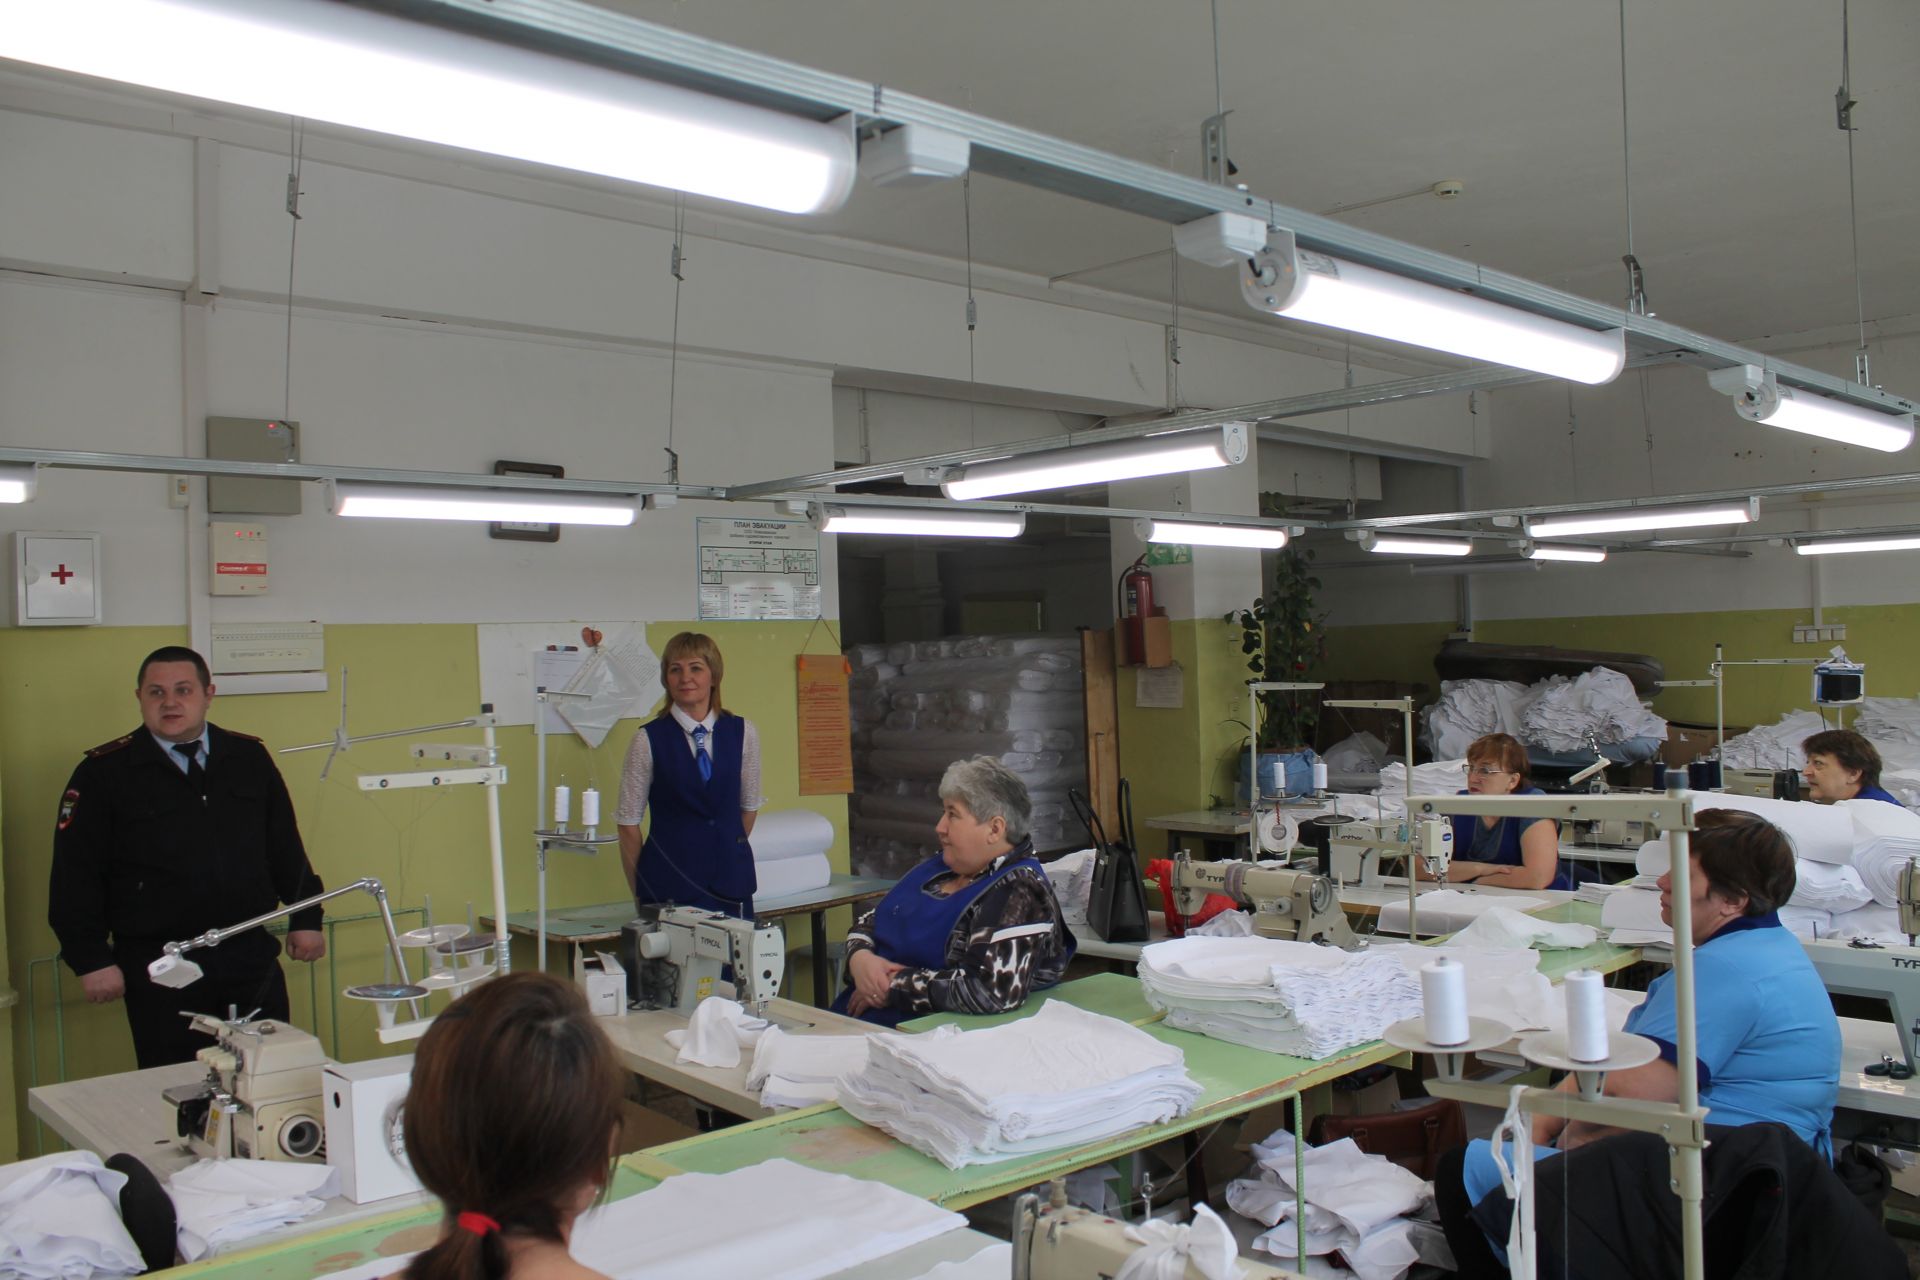 Перед 8 марта сотрудники ГИБДД посетили фабрику художественного ткачества